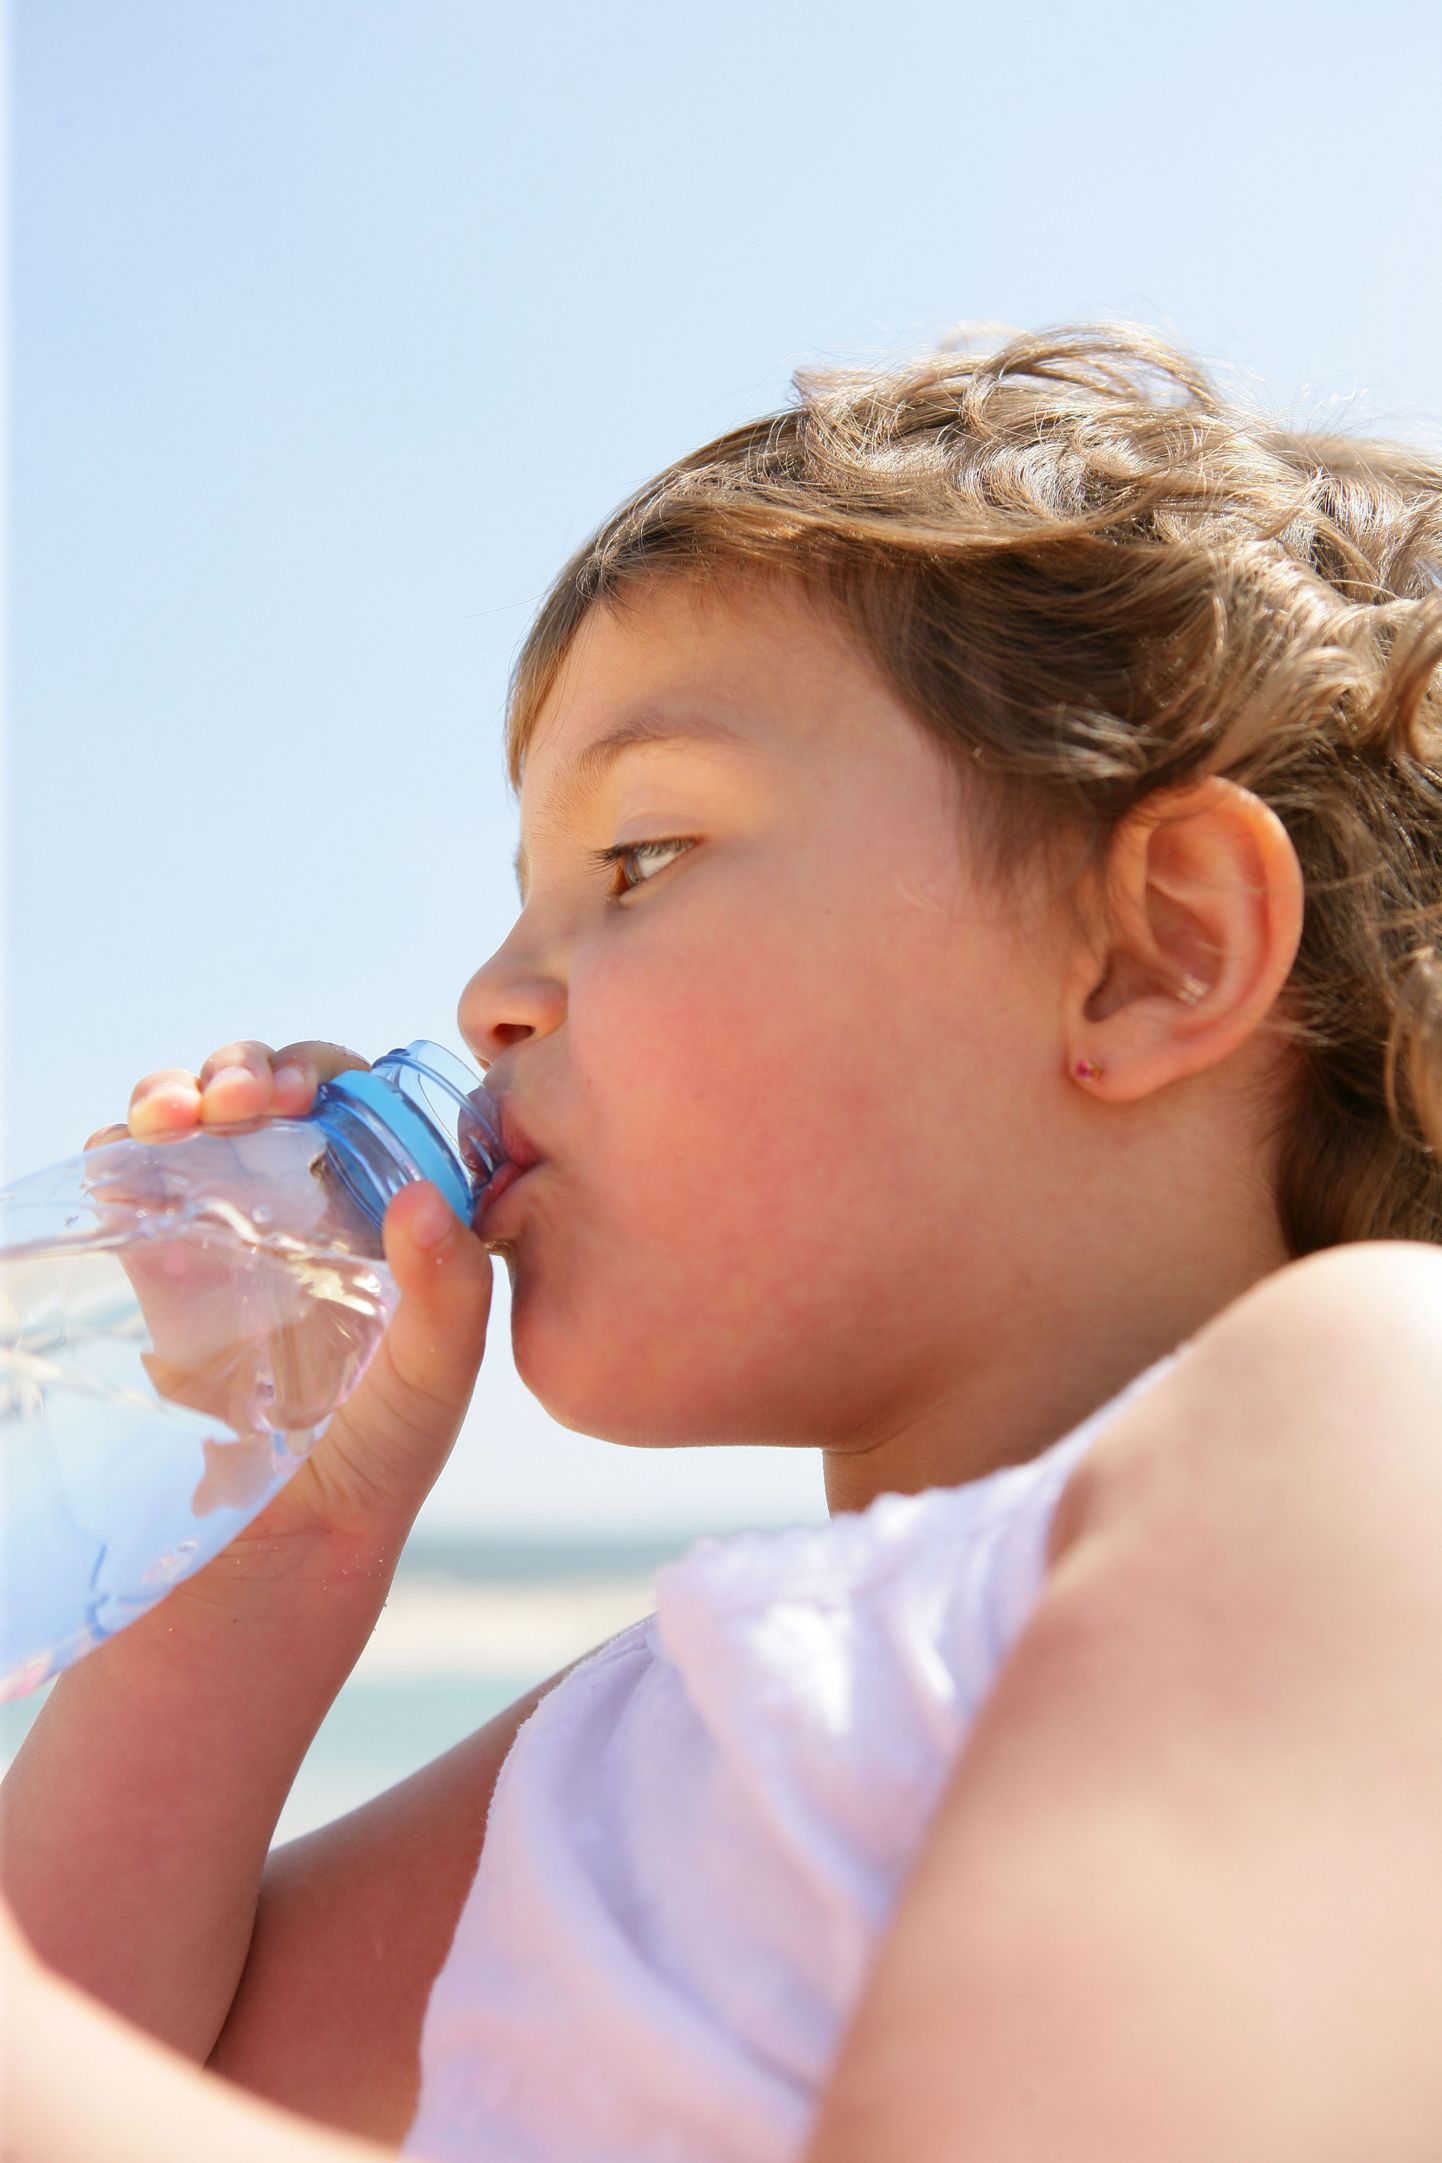 Kuumade ilmadega ohustab lapsi vedelikukaotus.